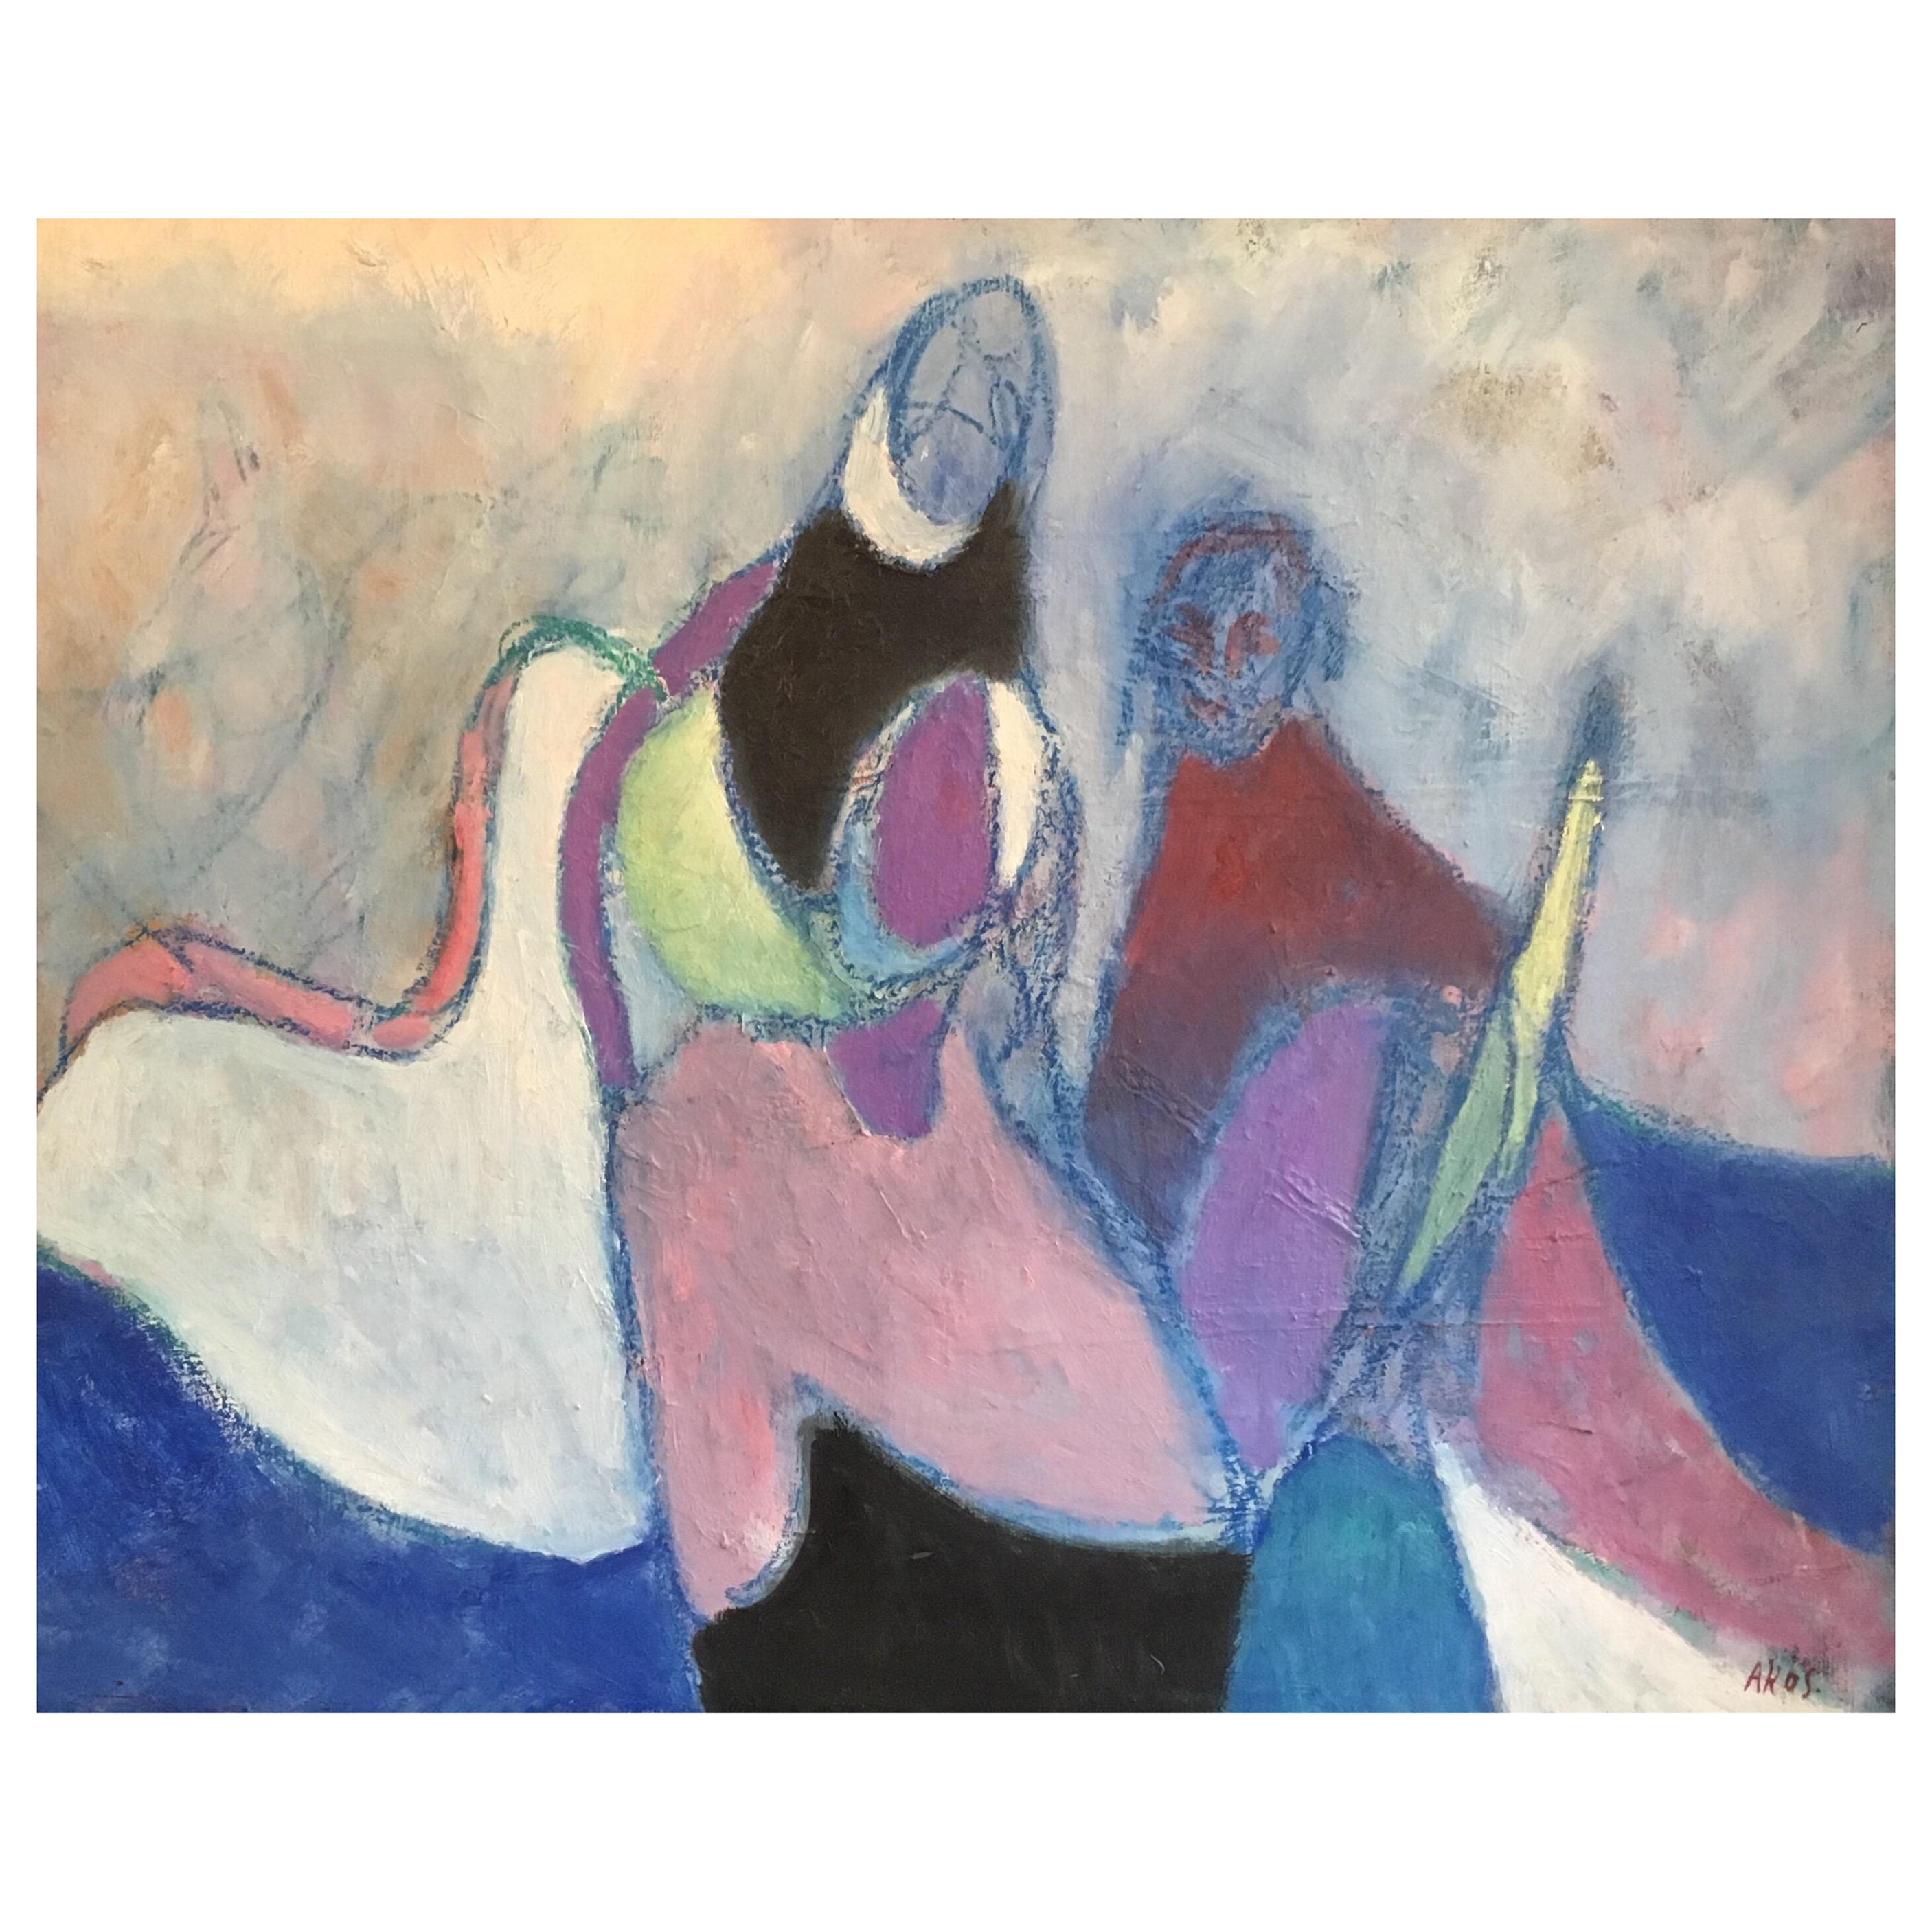 Portrait Painting Akos Biro - Très grandes figures cubistes abstraites françaises multicolores dansant - Peinture à l'huile originale 